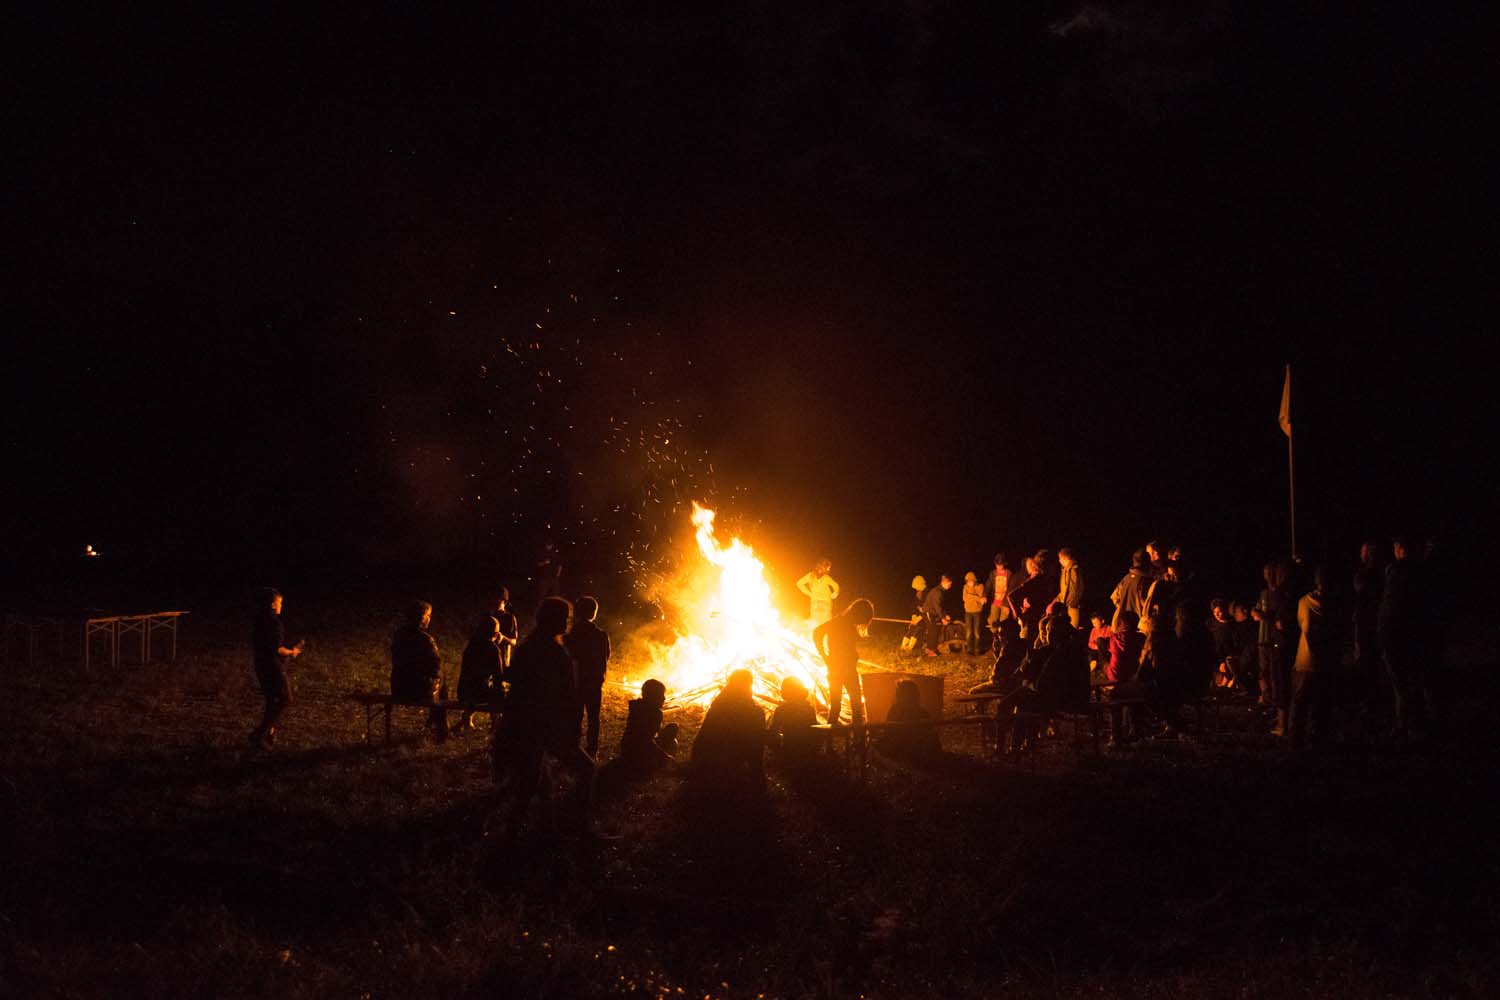 Abschlussabend de Zeltlagers 2017 an einem großen Lagerfeuer